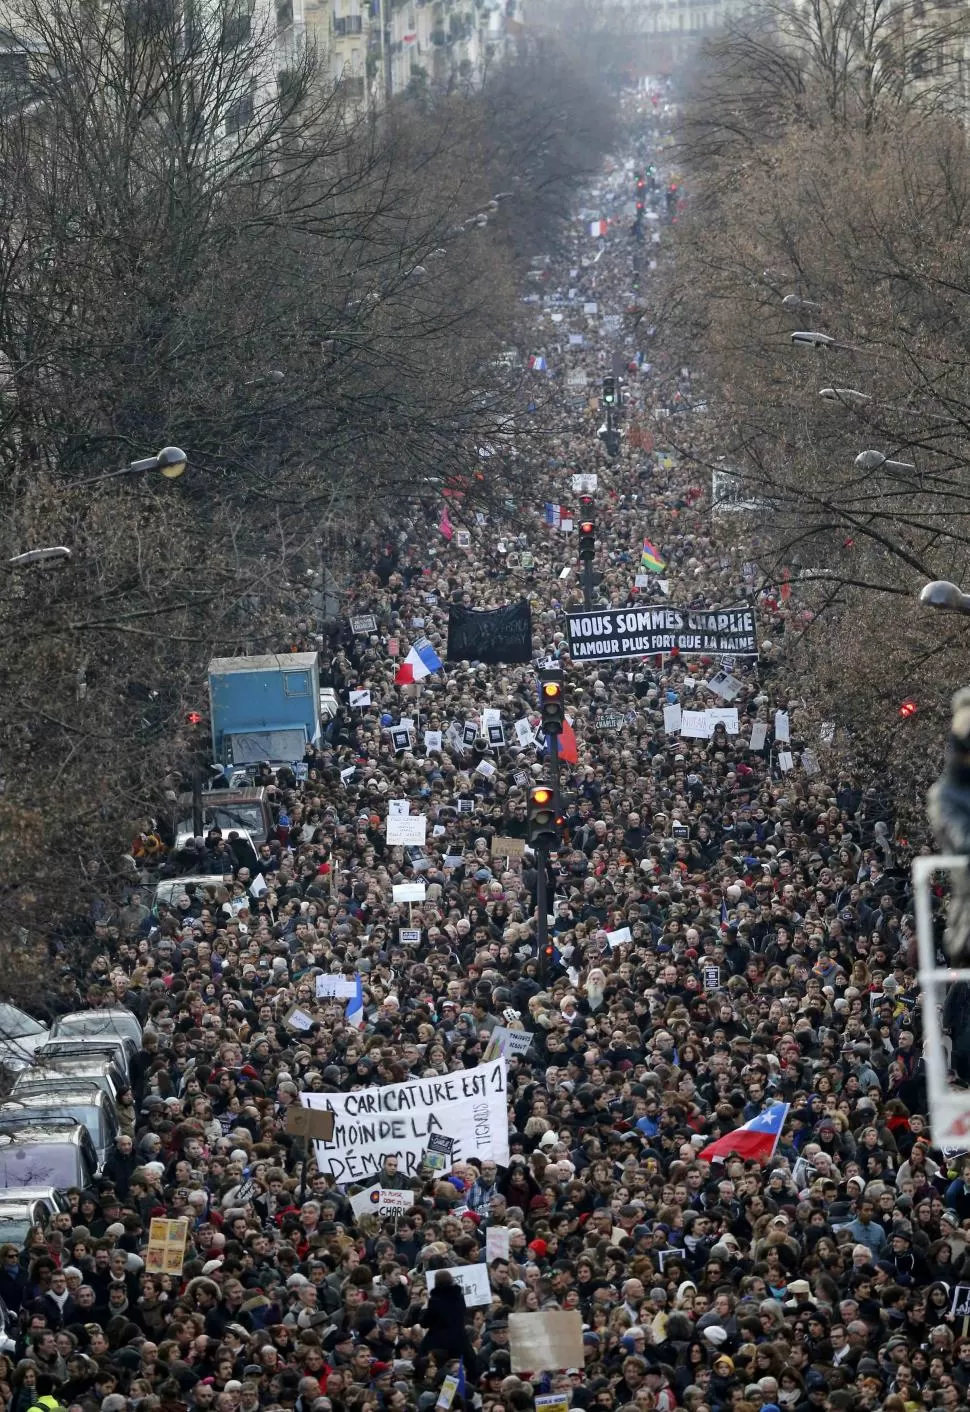 SIMBÓLICA. La marcha en repudio al ataque a la redacción de Charlie Hebdo reunió a 4 millones de personas. REUTERS (ARCHIVO)